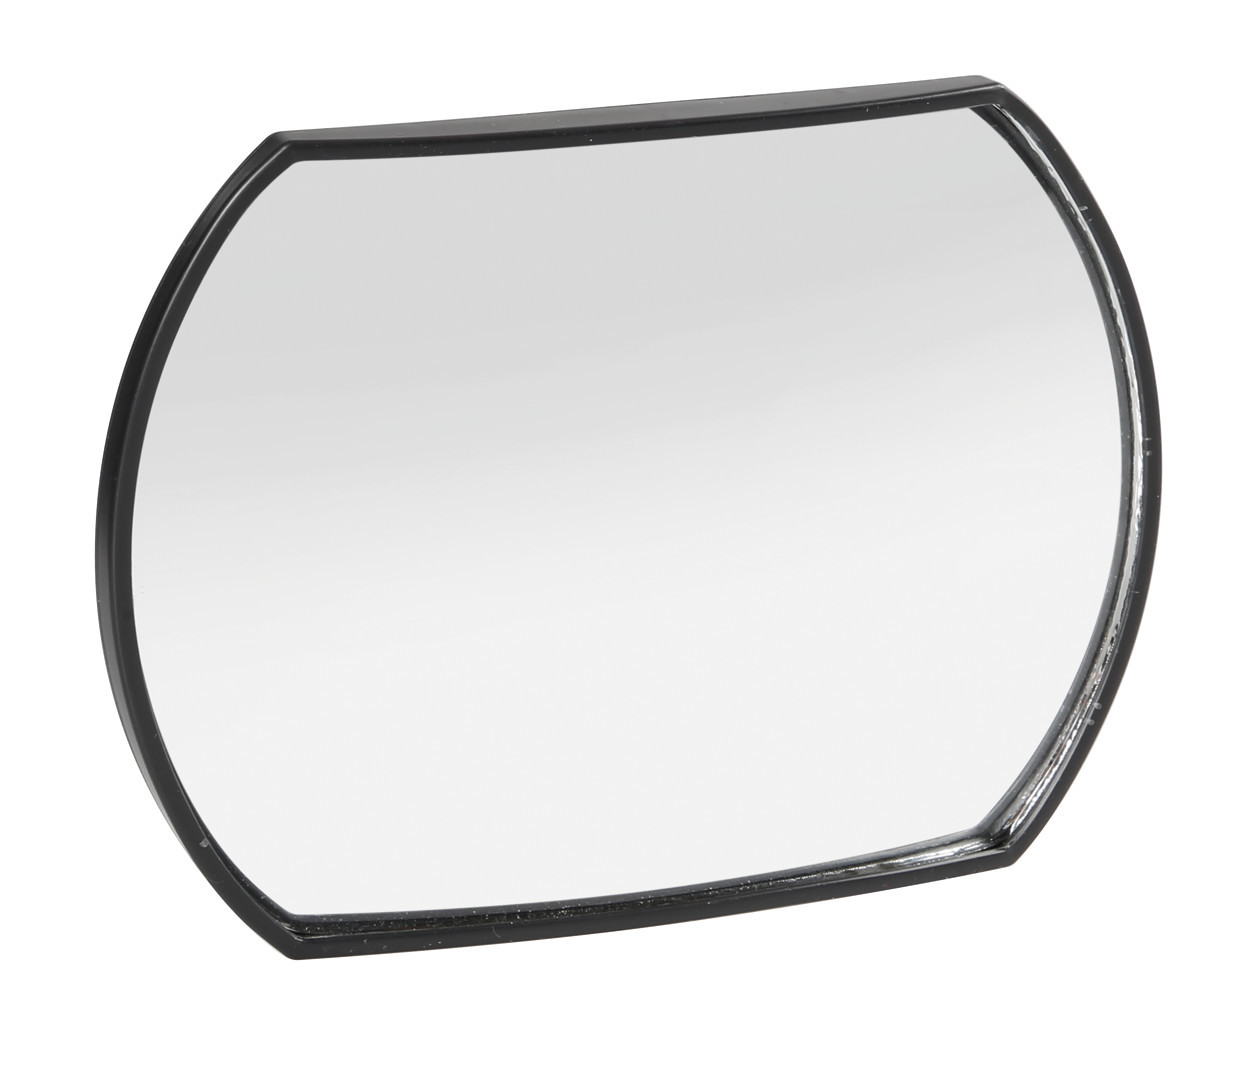 Vision plus, adjustable adhesive blind spot mirror thumb